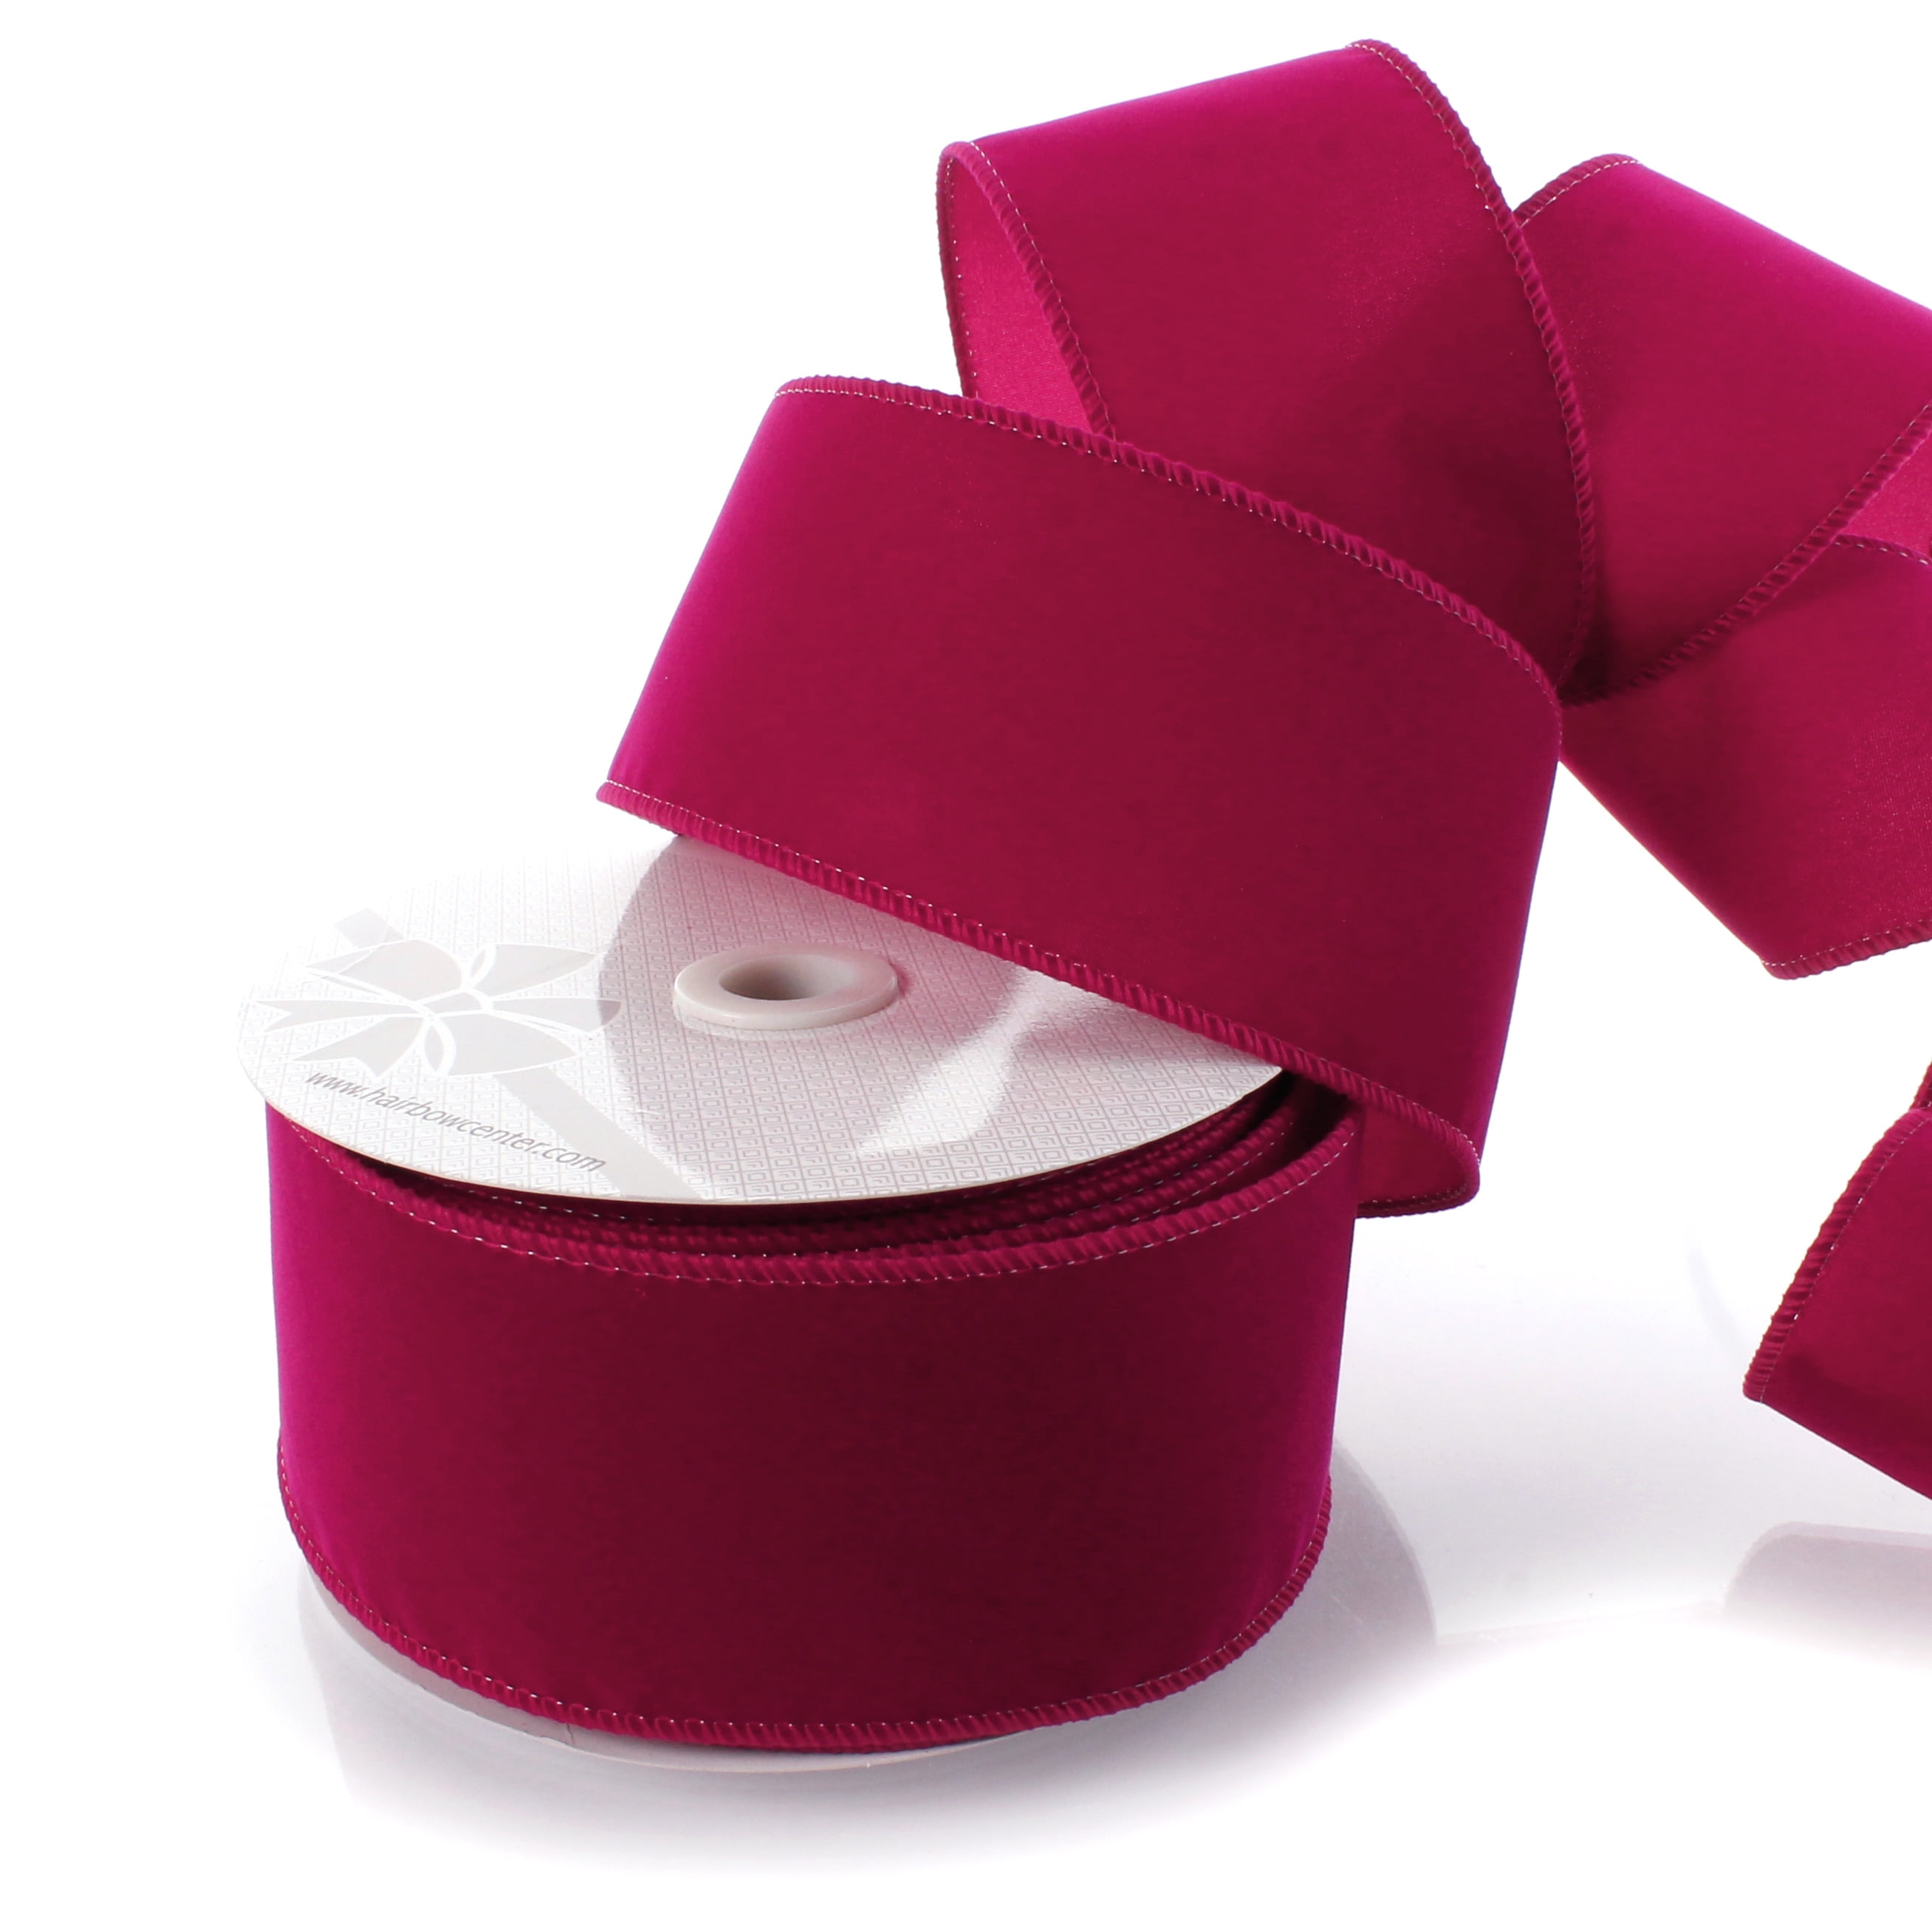 Raz Hot Pink Velvet Ribbon , 2.5 inch Ribbon, Luxury Ribbon